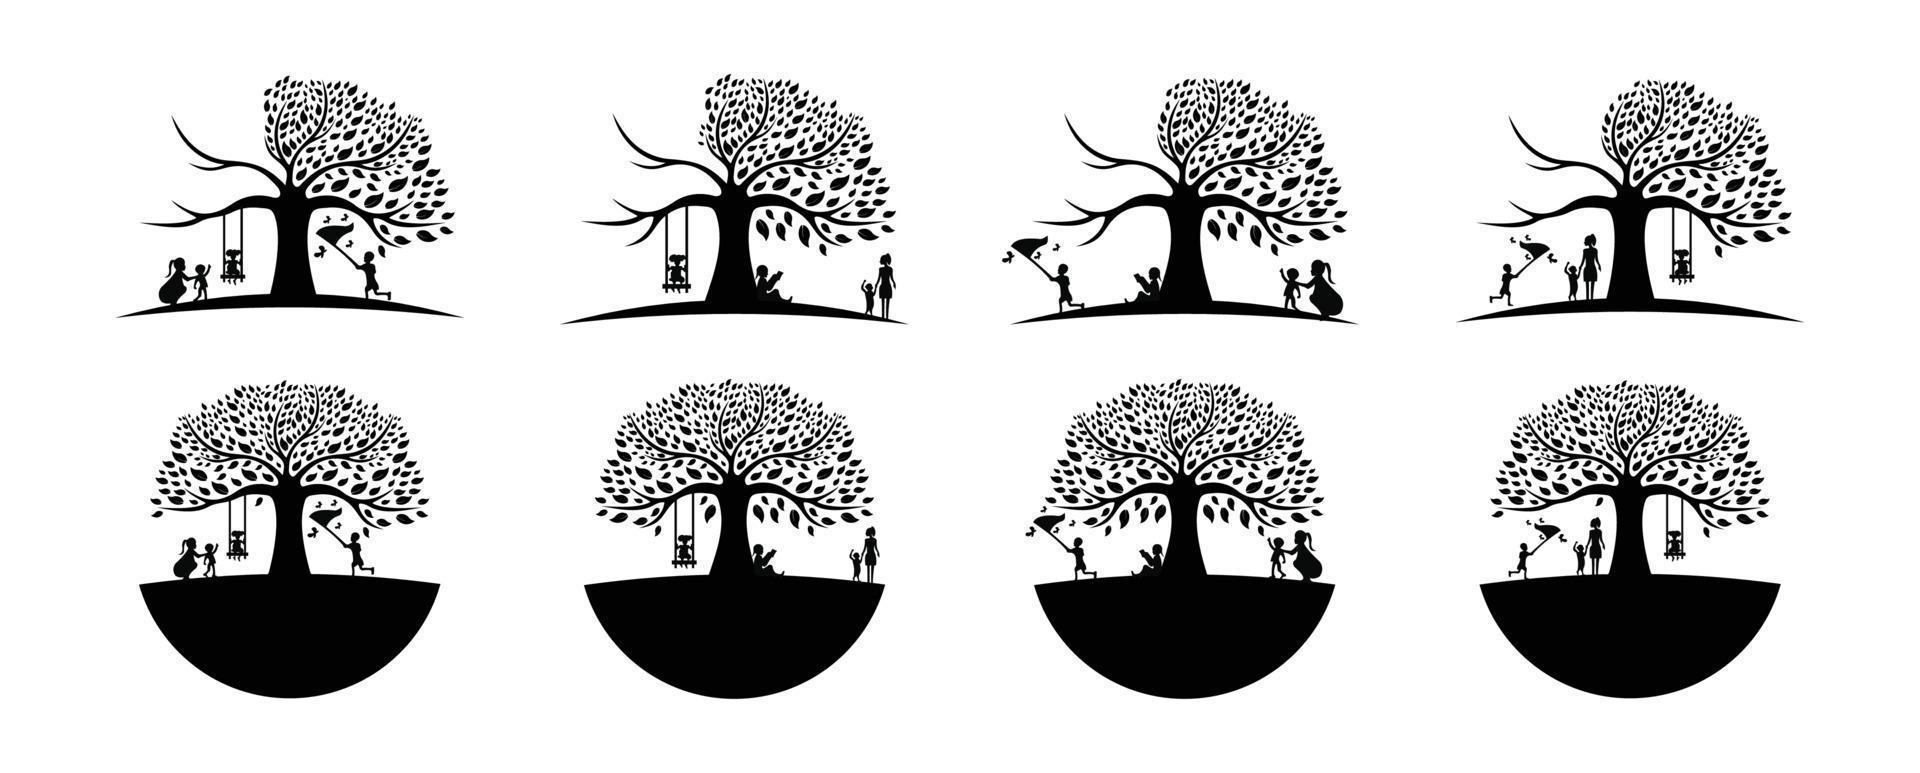 Kinder und Mütter spielen unter dem Baum, das Logo der schwarzen Eiche und die Wurzeln entwerfen Vektorgrafik vektor